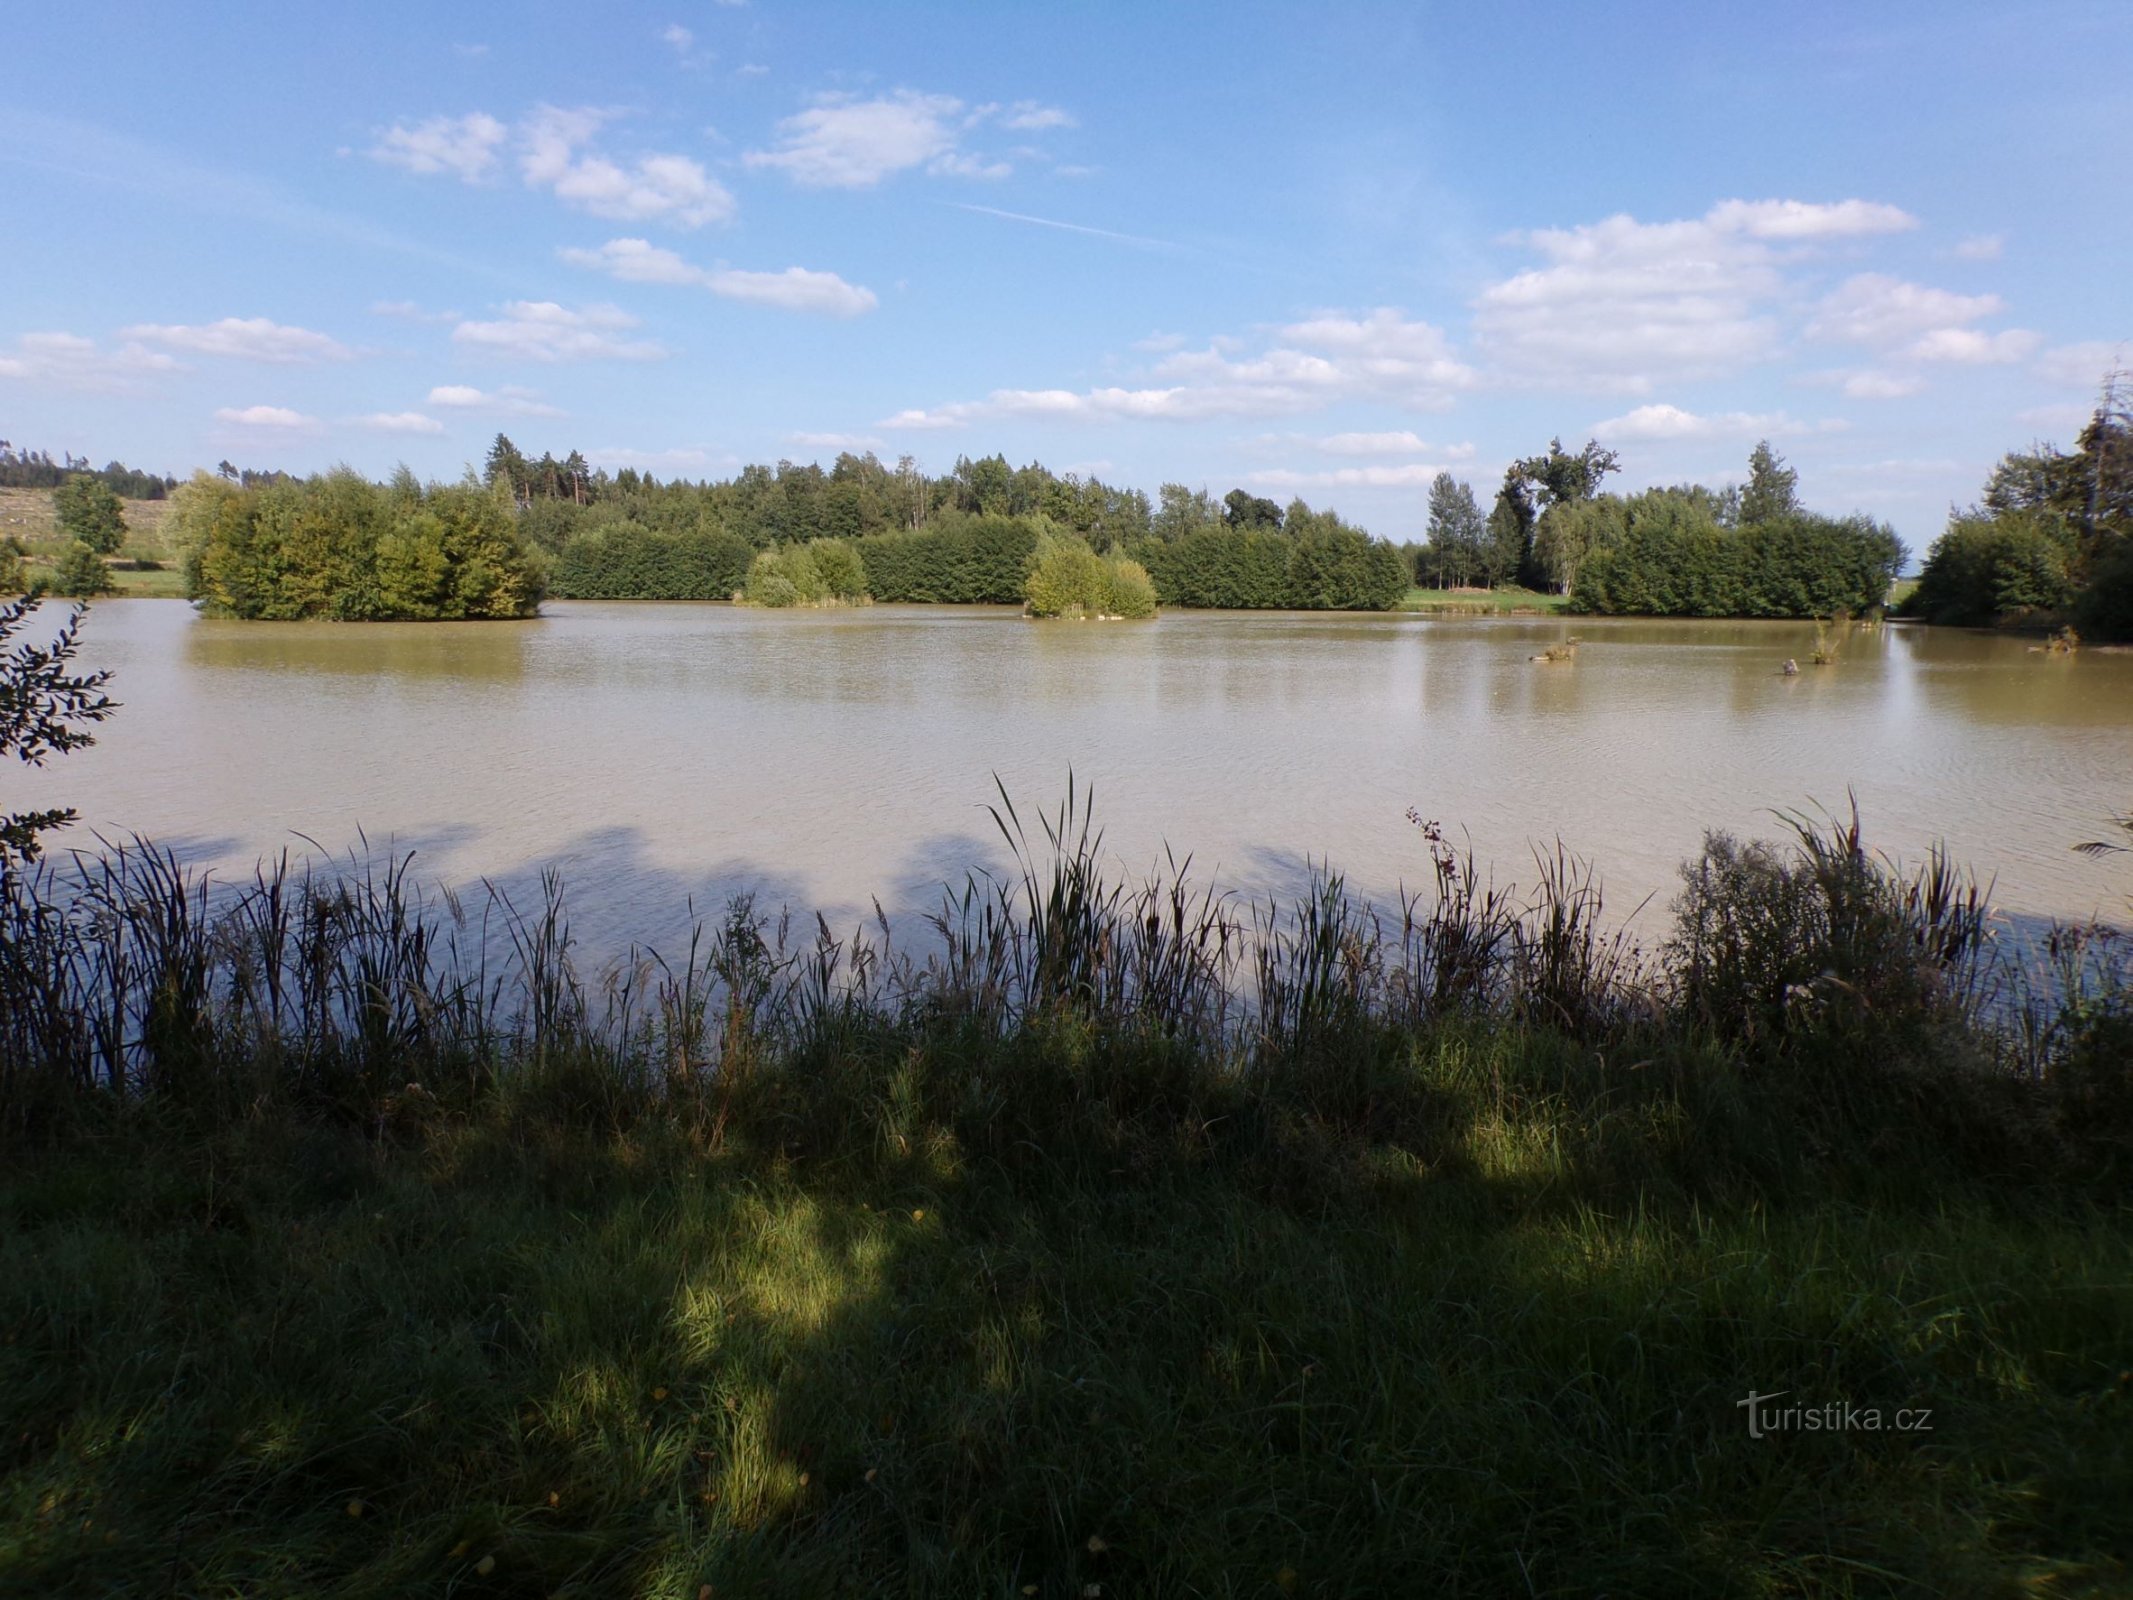 Chmelařův rybník (Mezilečí, 8.9.2021)